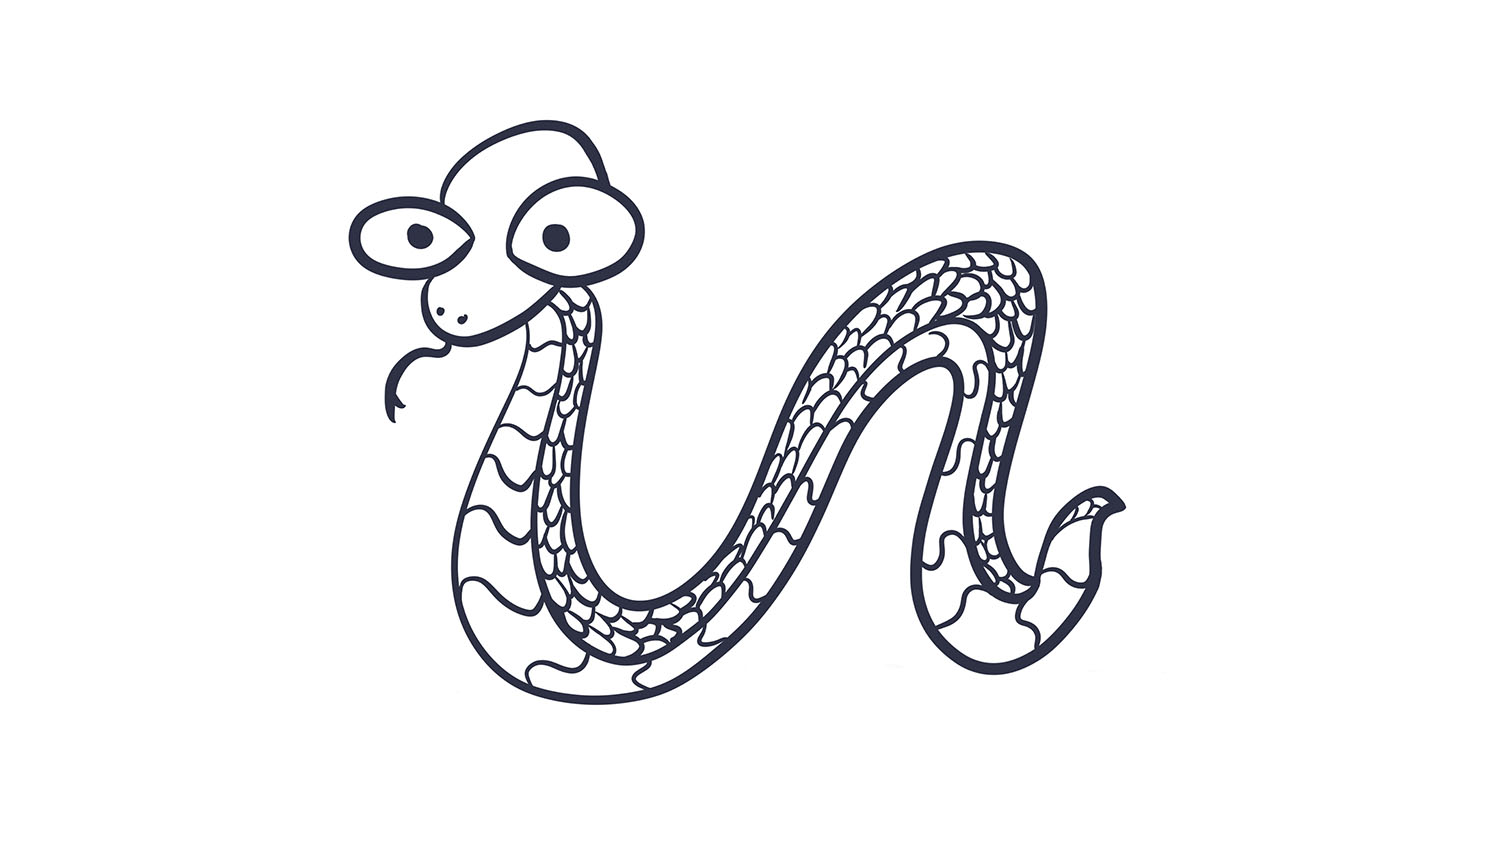 5. Serpiente / Snake. 103dibujos